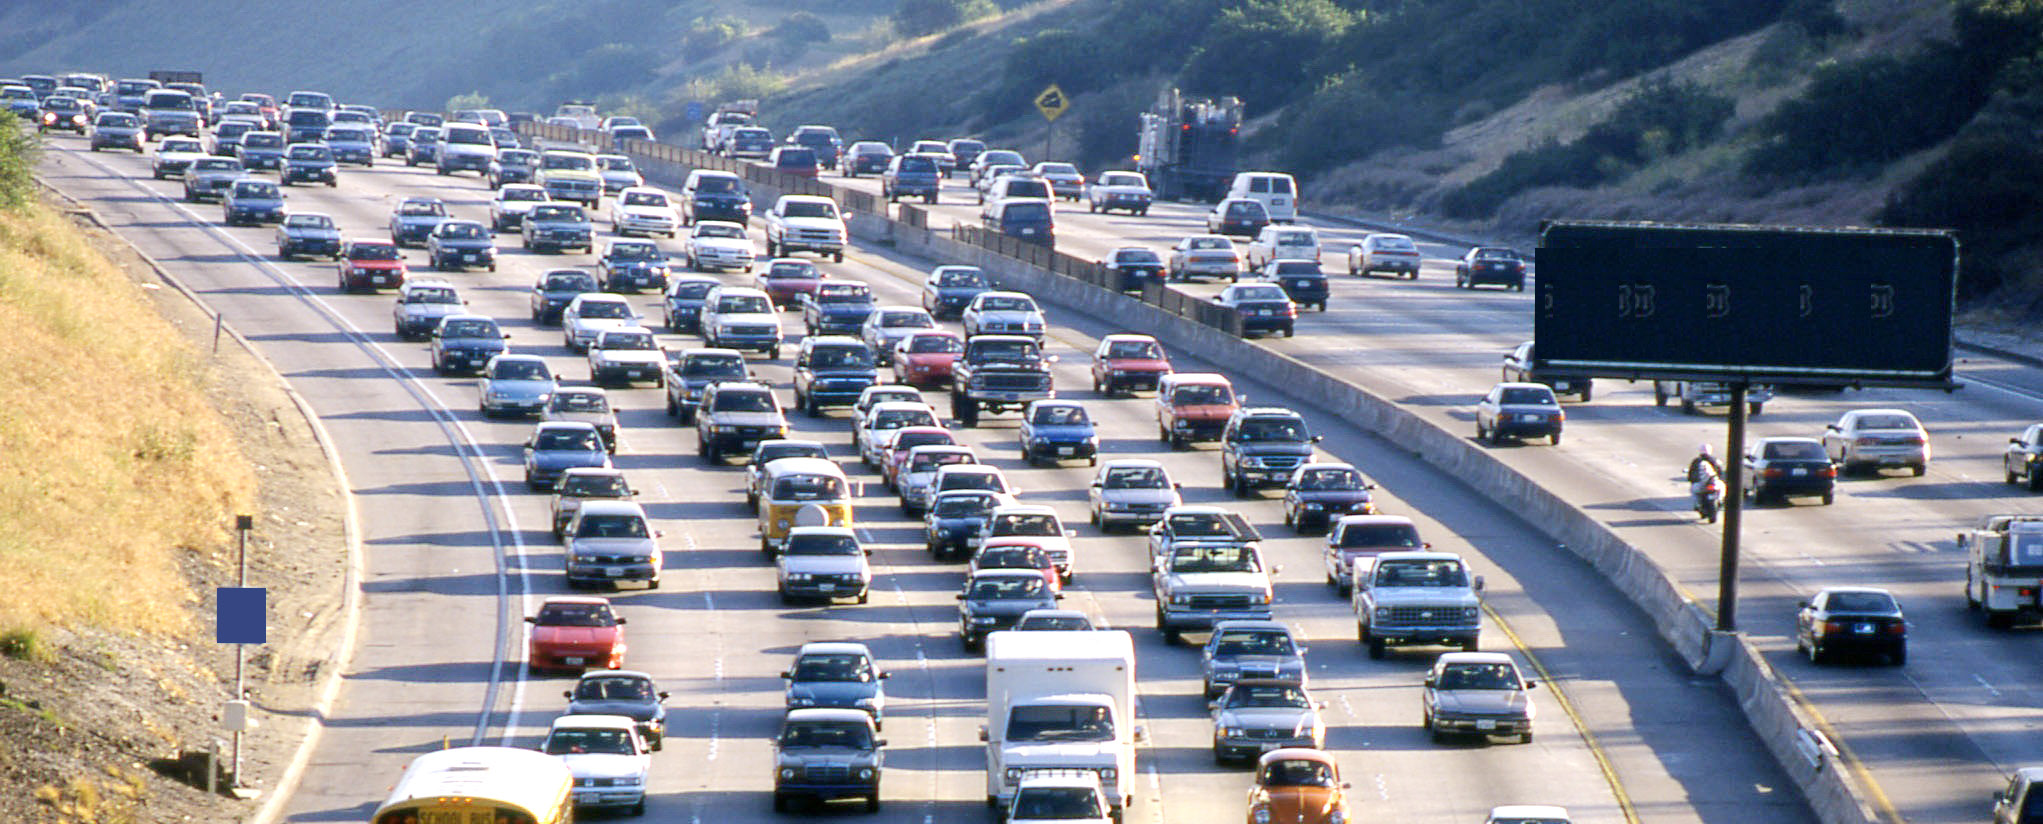 缓解交通拥堵是降低排放的最新方法